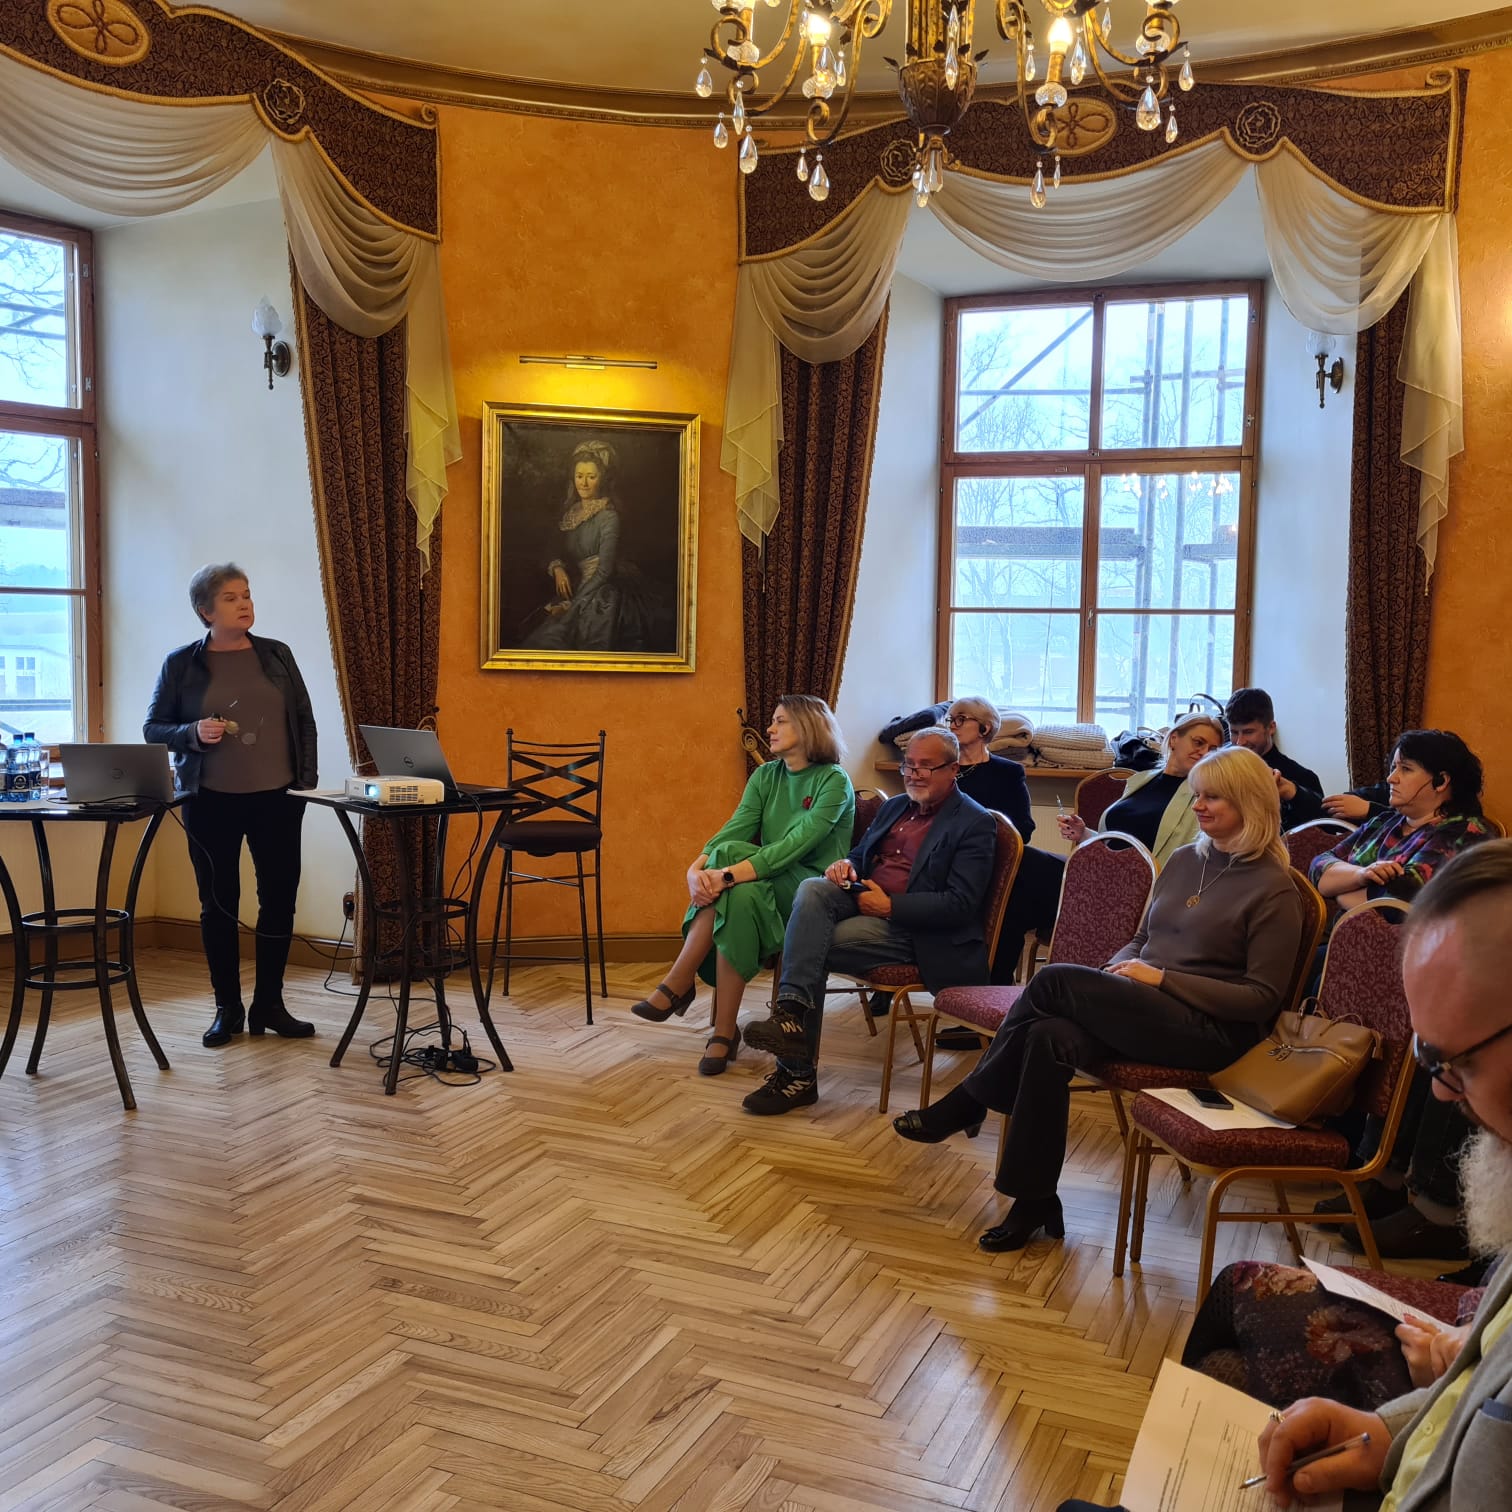  Jaunpilī notika otrais apmācību seminārs “Labas pārvaldības principu stiprināšana Latvijas pašvaldībās”